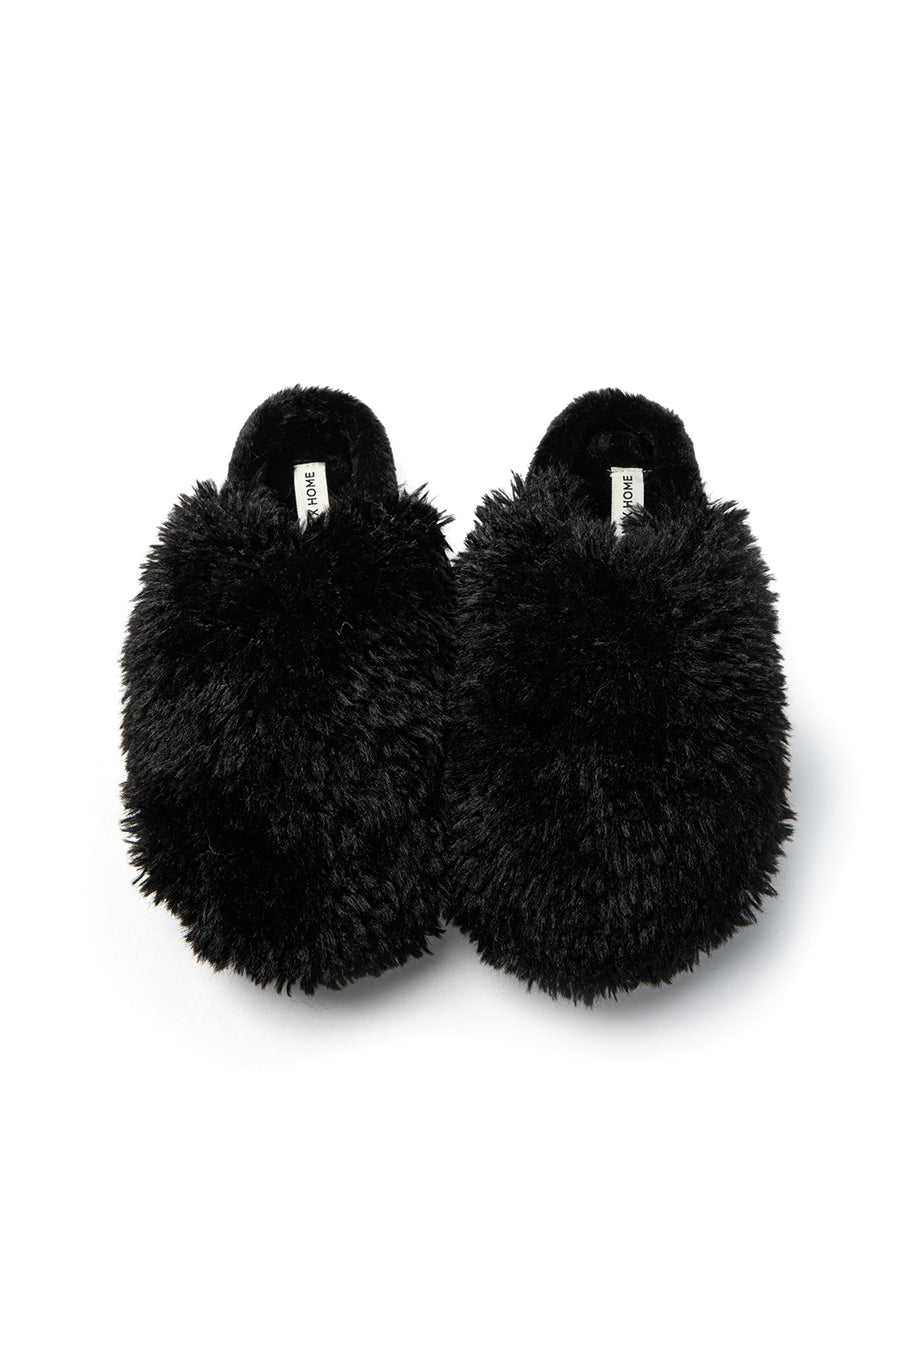 JOMIX Pantofole Donna Invernali Pelose Ciabatte Calde Inverno da Casa per Ragazza Scarpe Termiche Slip On Elegante MD8585